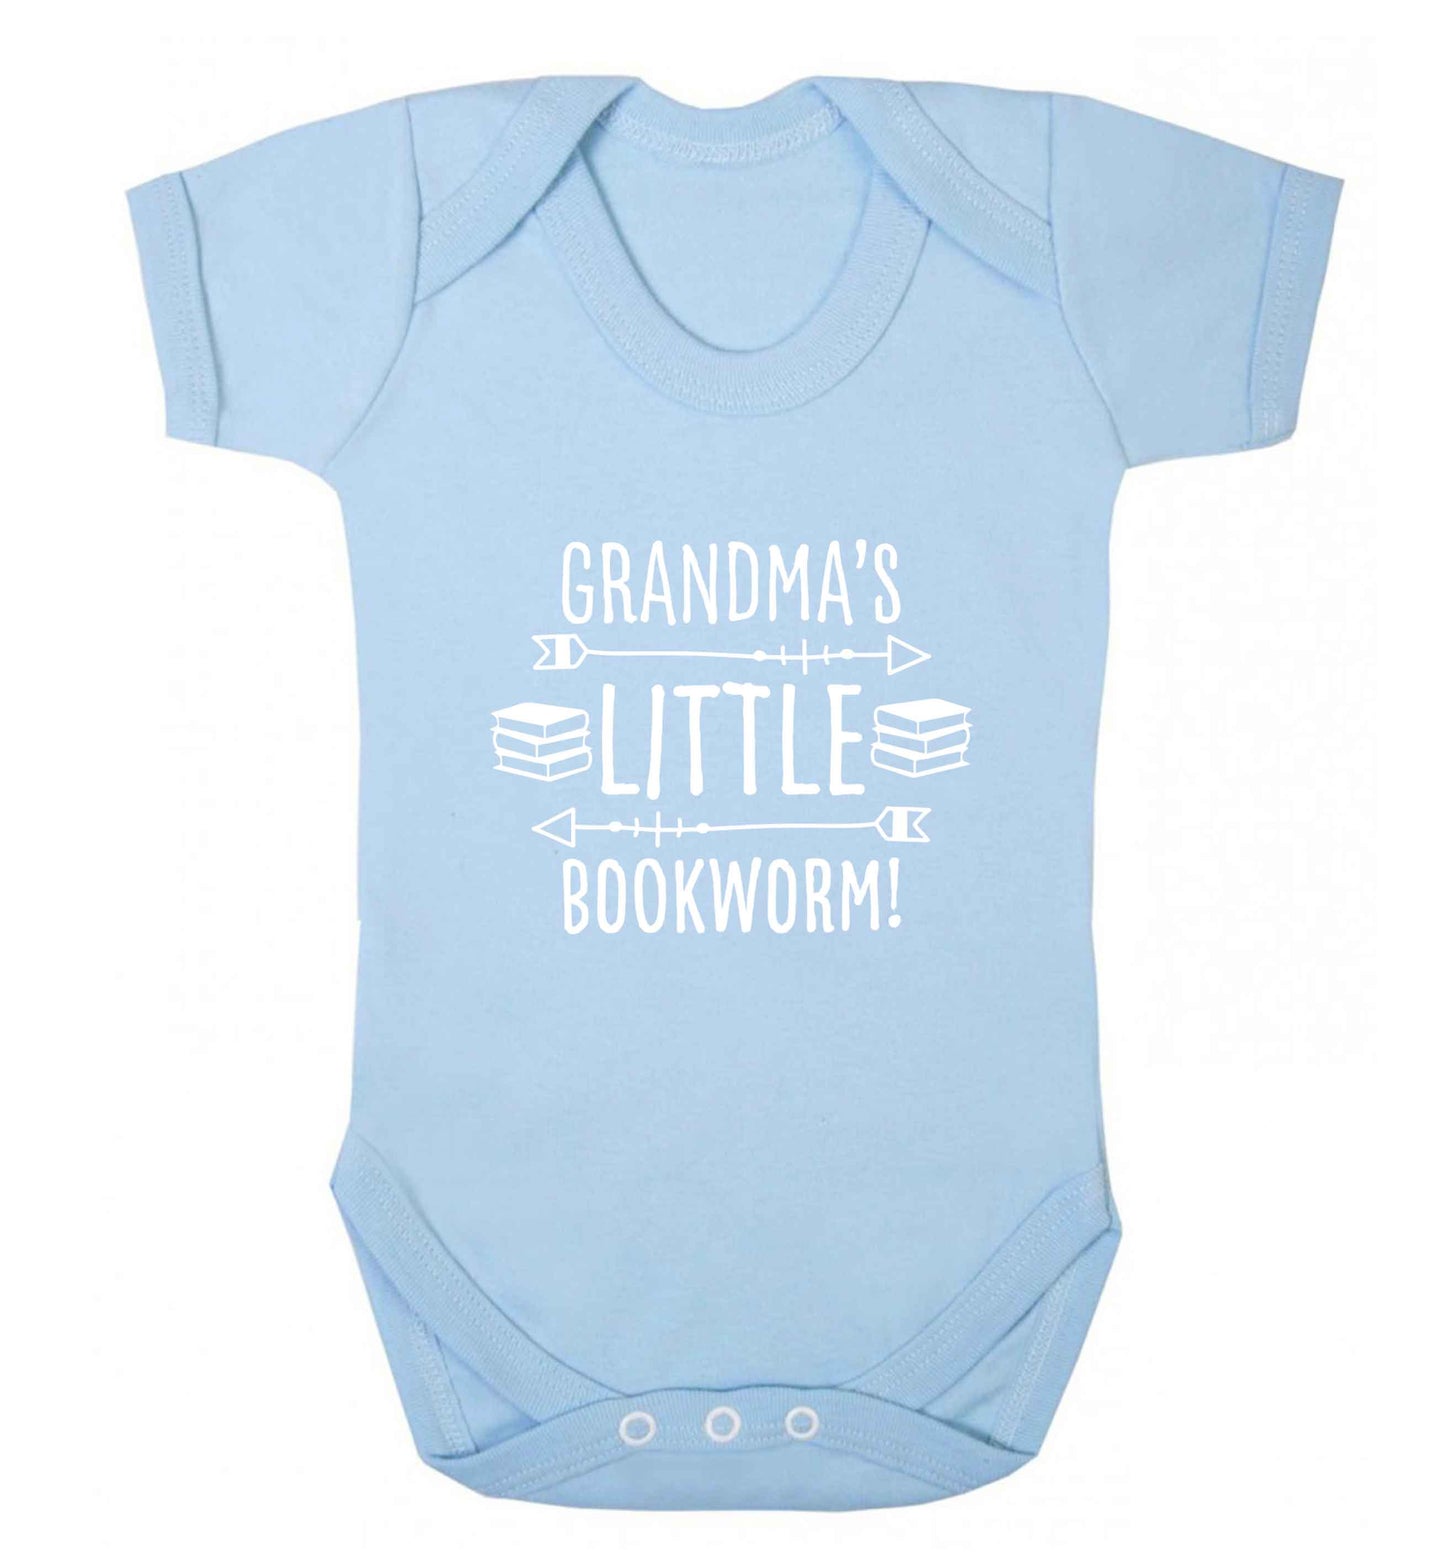 Grandma's little bookworm baby vest pale blue 18-24 months